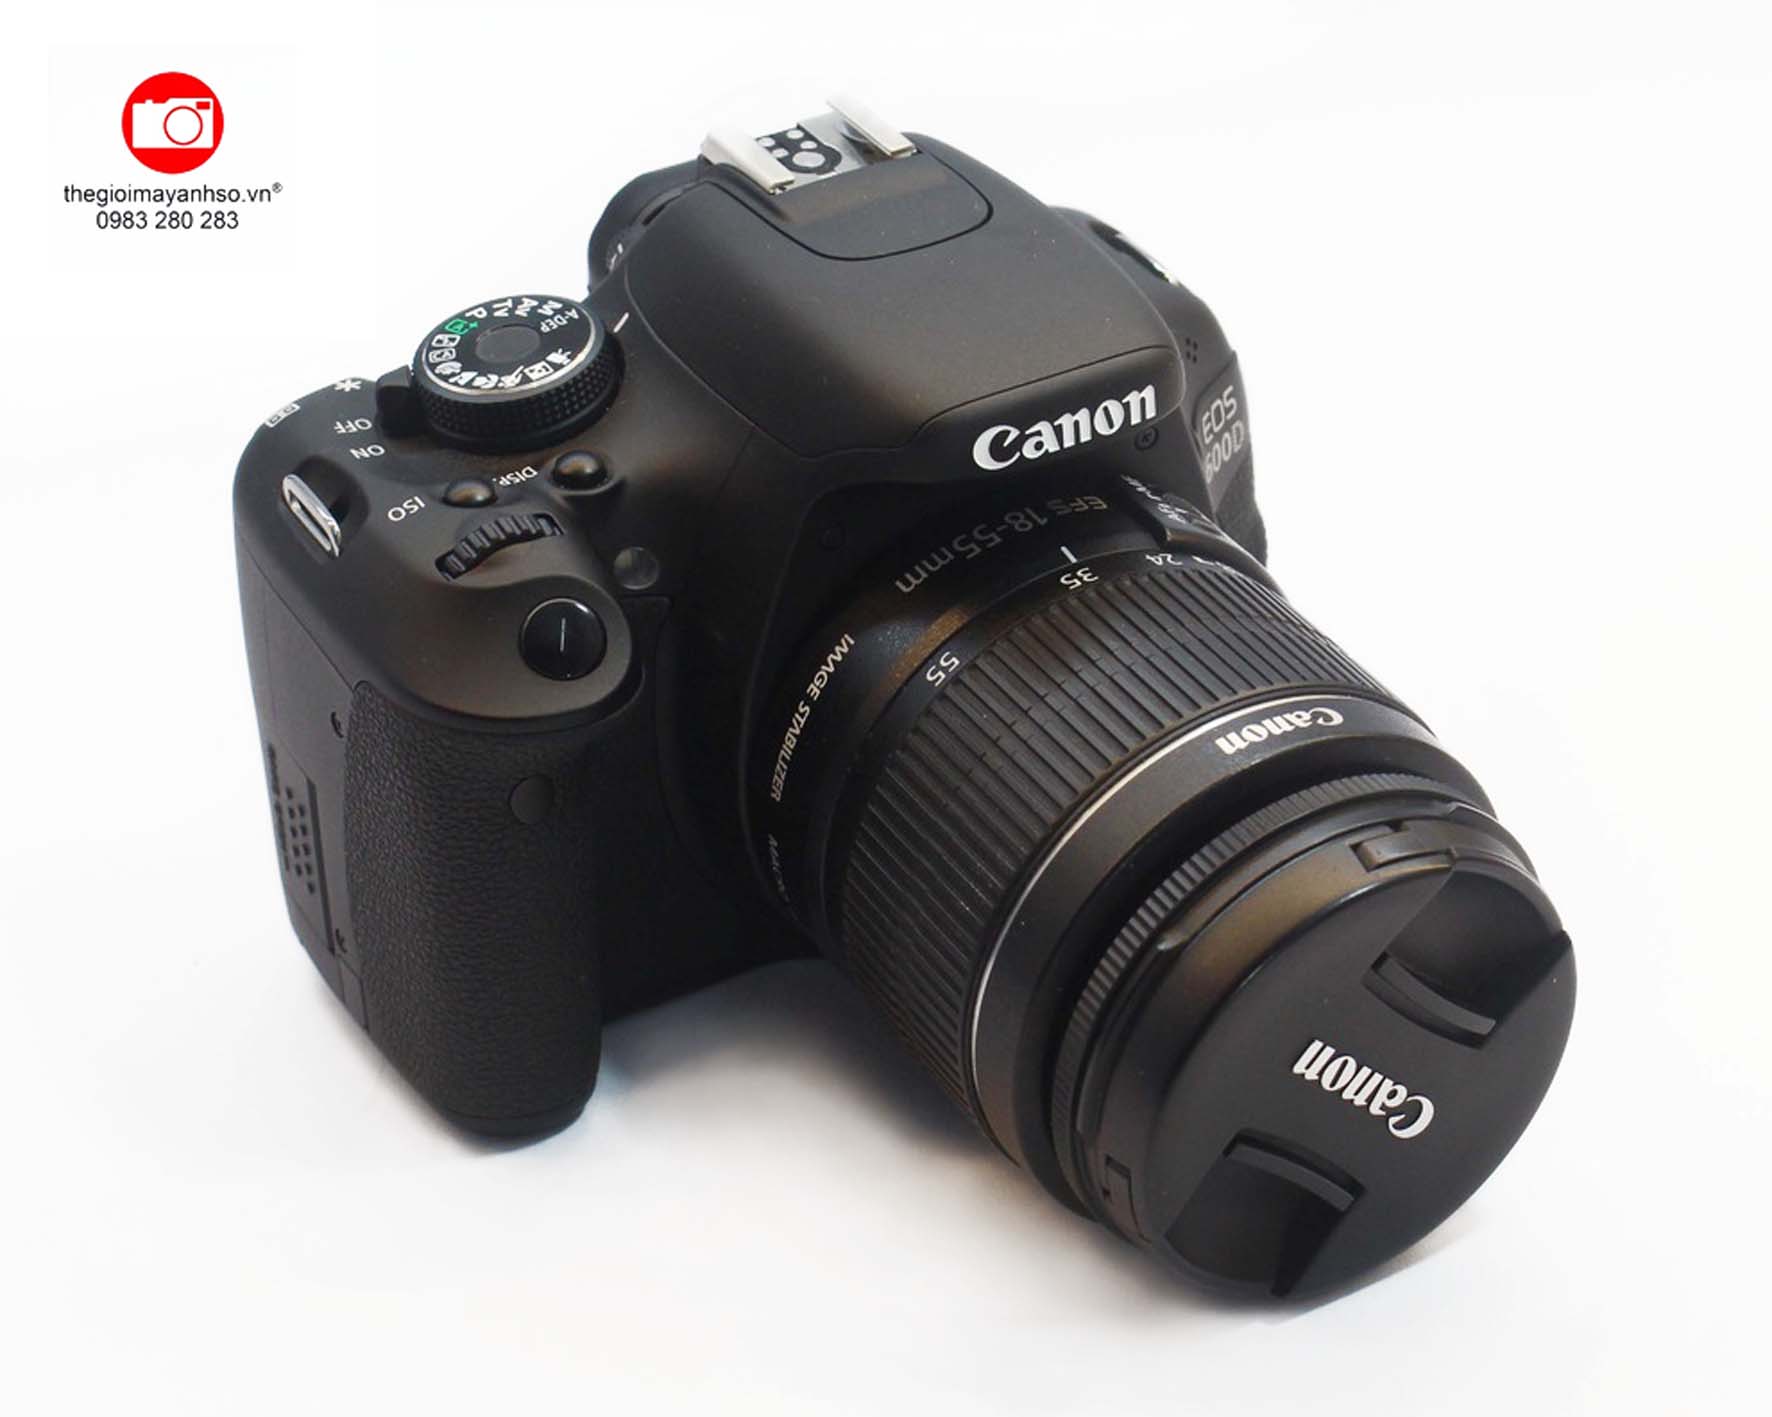 Canon EOS Kiss X5 giá là một máy ảnh DSLR tuyệt vời cho các tín đồ nhiếp ảnh. Máy ảnh này có chất lượng ảnh đẹp, khả năng chụp hình nhanh và ổn định. Đối với những người mới bắt đầu nhiếp ảnh, giá của Canon EOS Kiss X5 là một tổng hợp tuyệt hảo của các tính năng. Nhấp chuột vào hình ảnh để khám phá thế giới nhiếp ảnh.